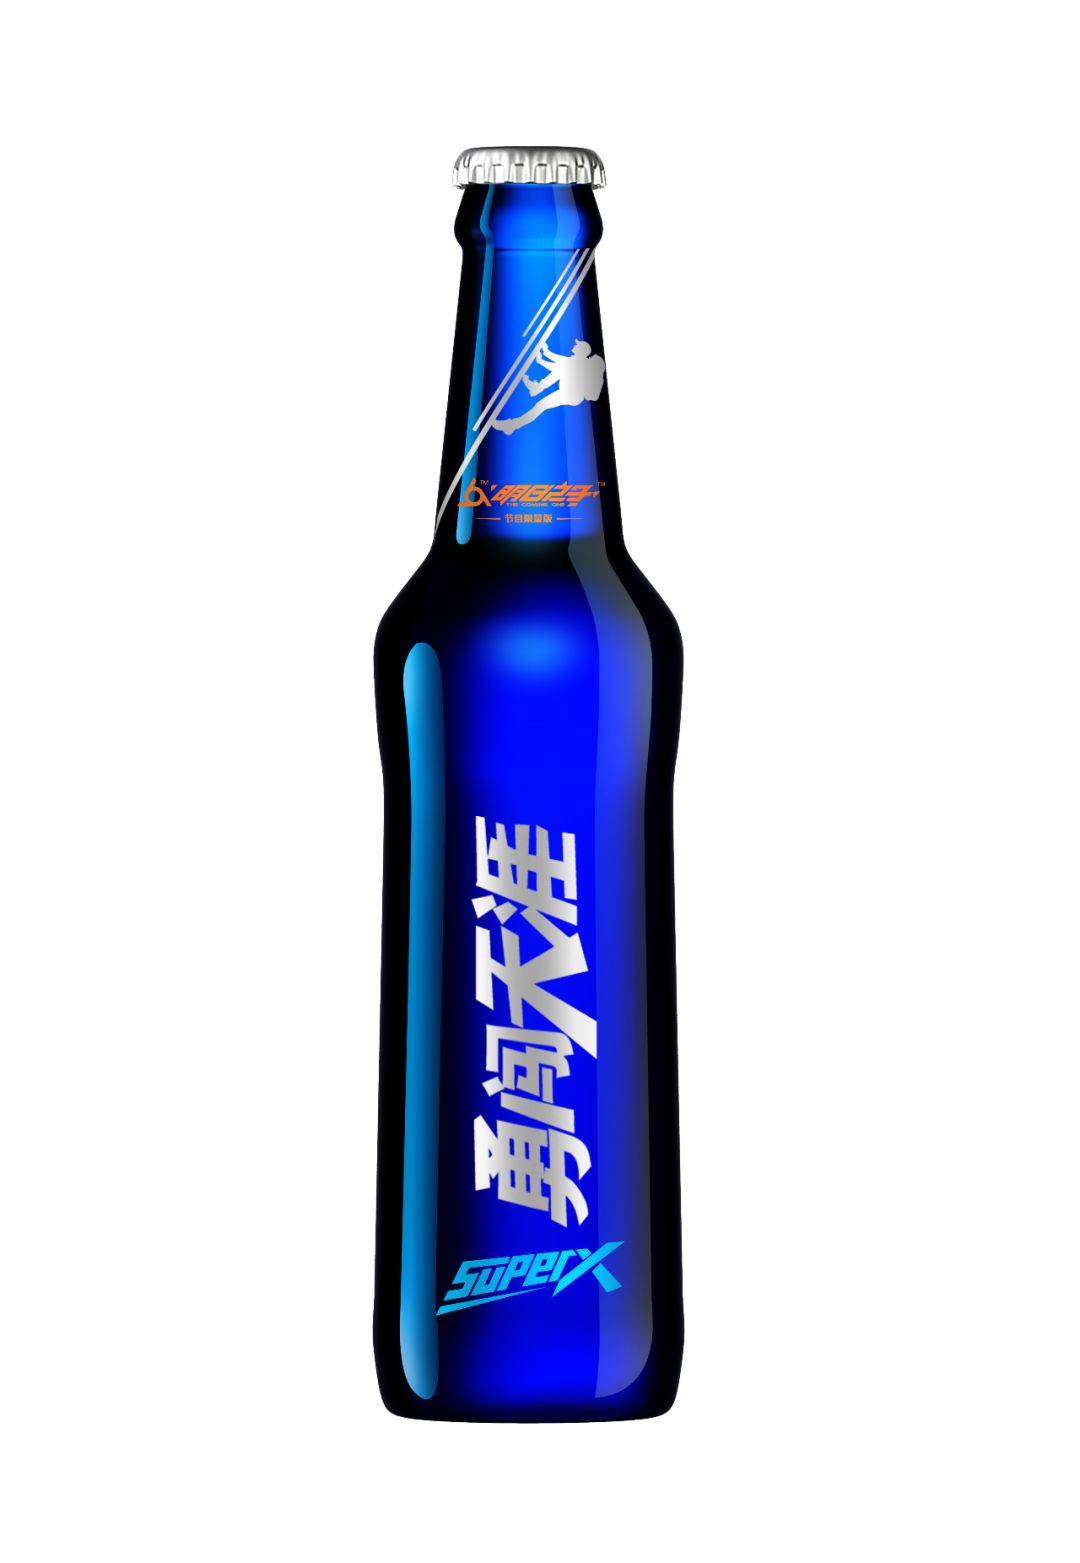 搭配2瓶「勇闯天涯superx」啤酒,既清爽解腻而又回味悠长!